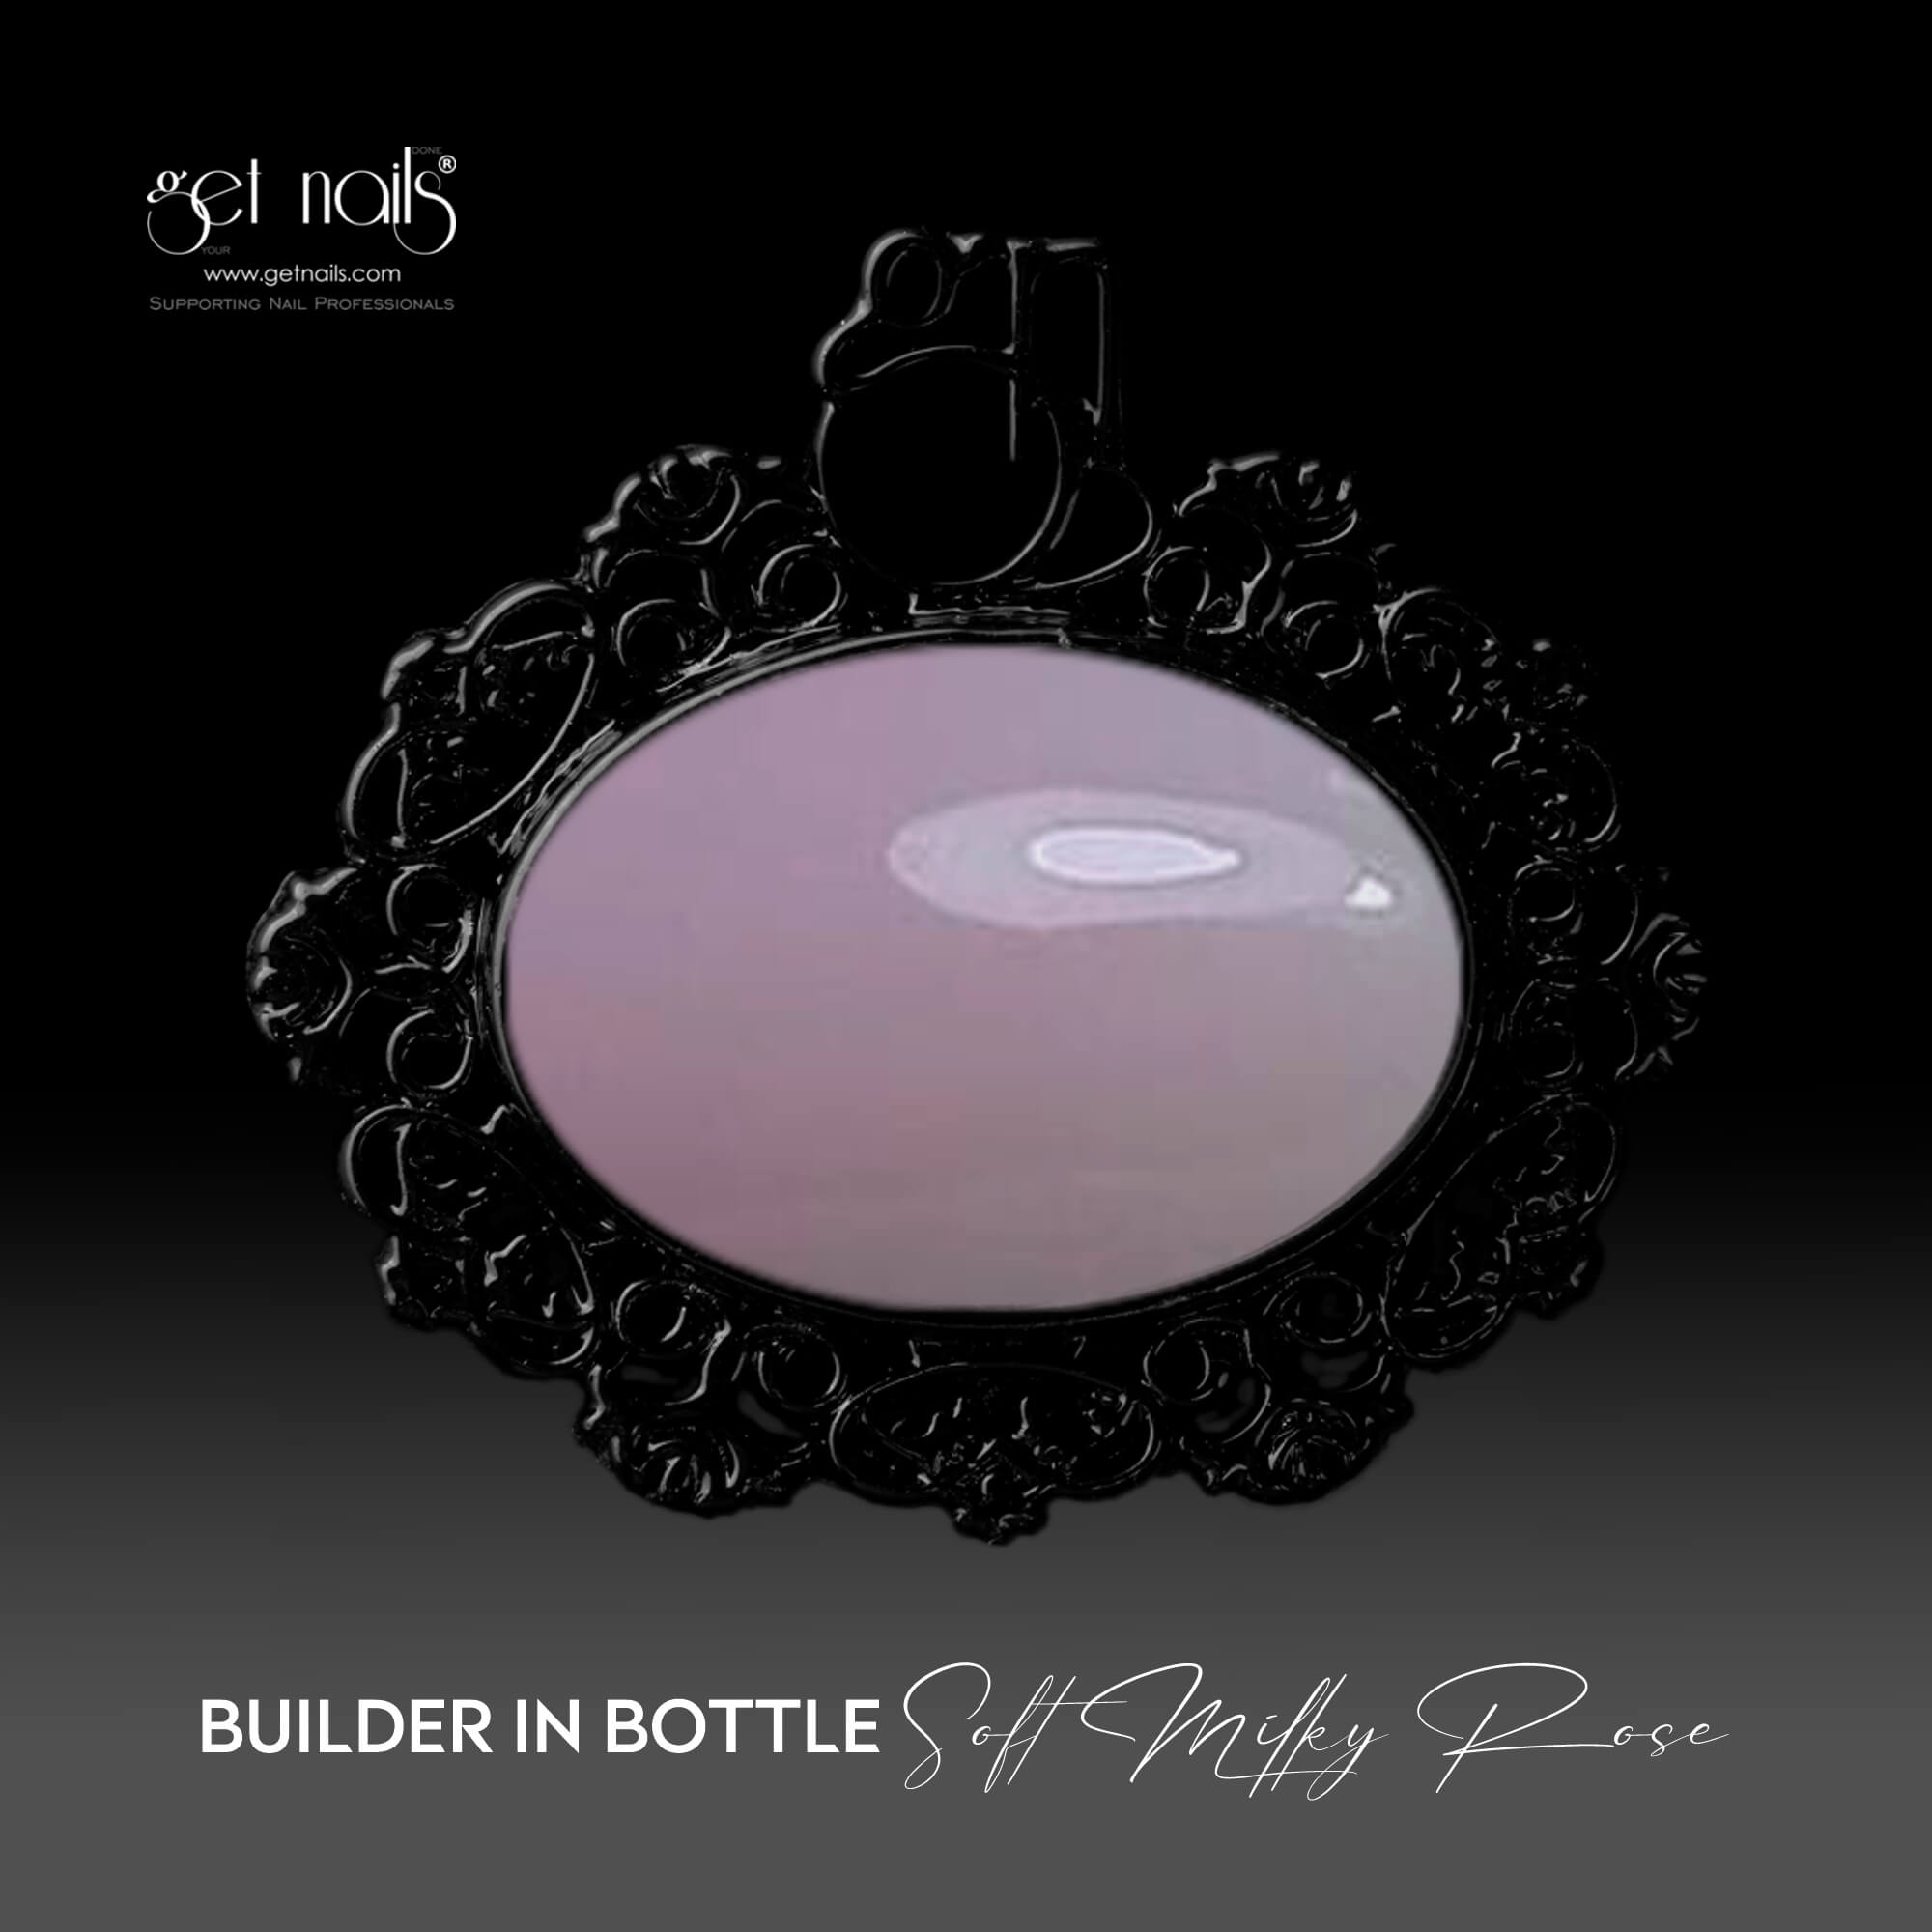 Get Nails Austria - Builder in Bottle Soft Milky Rose 15g